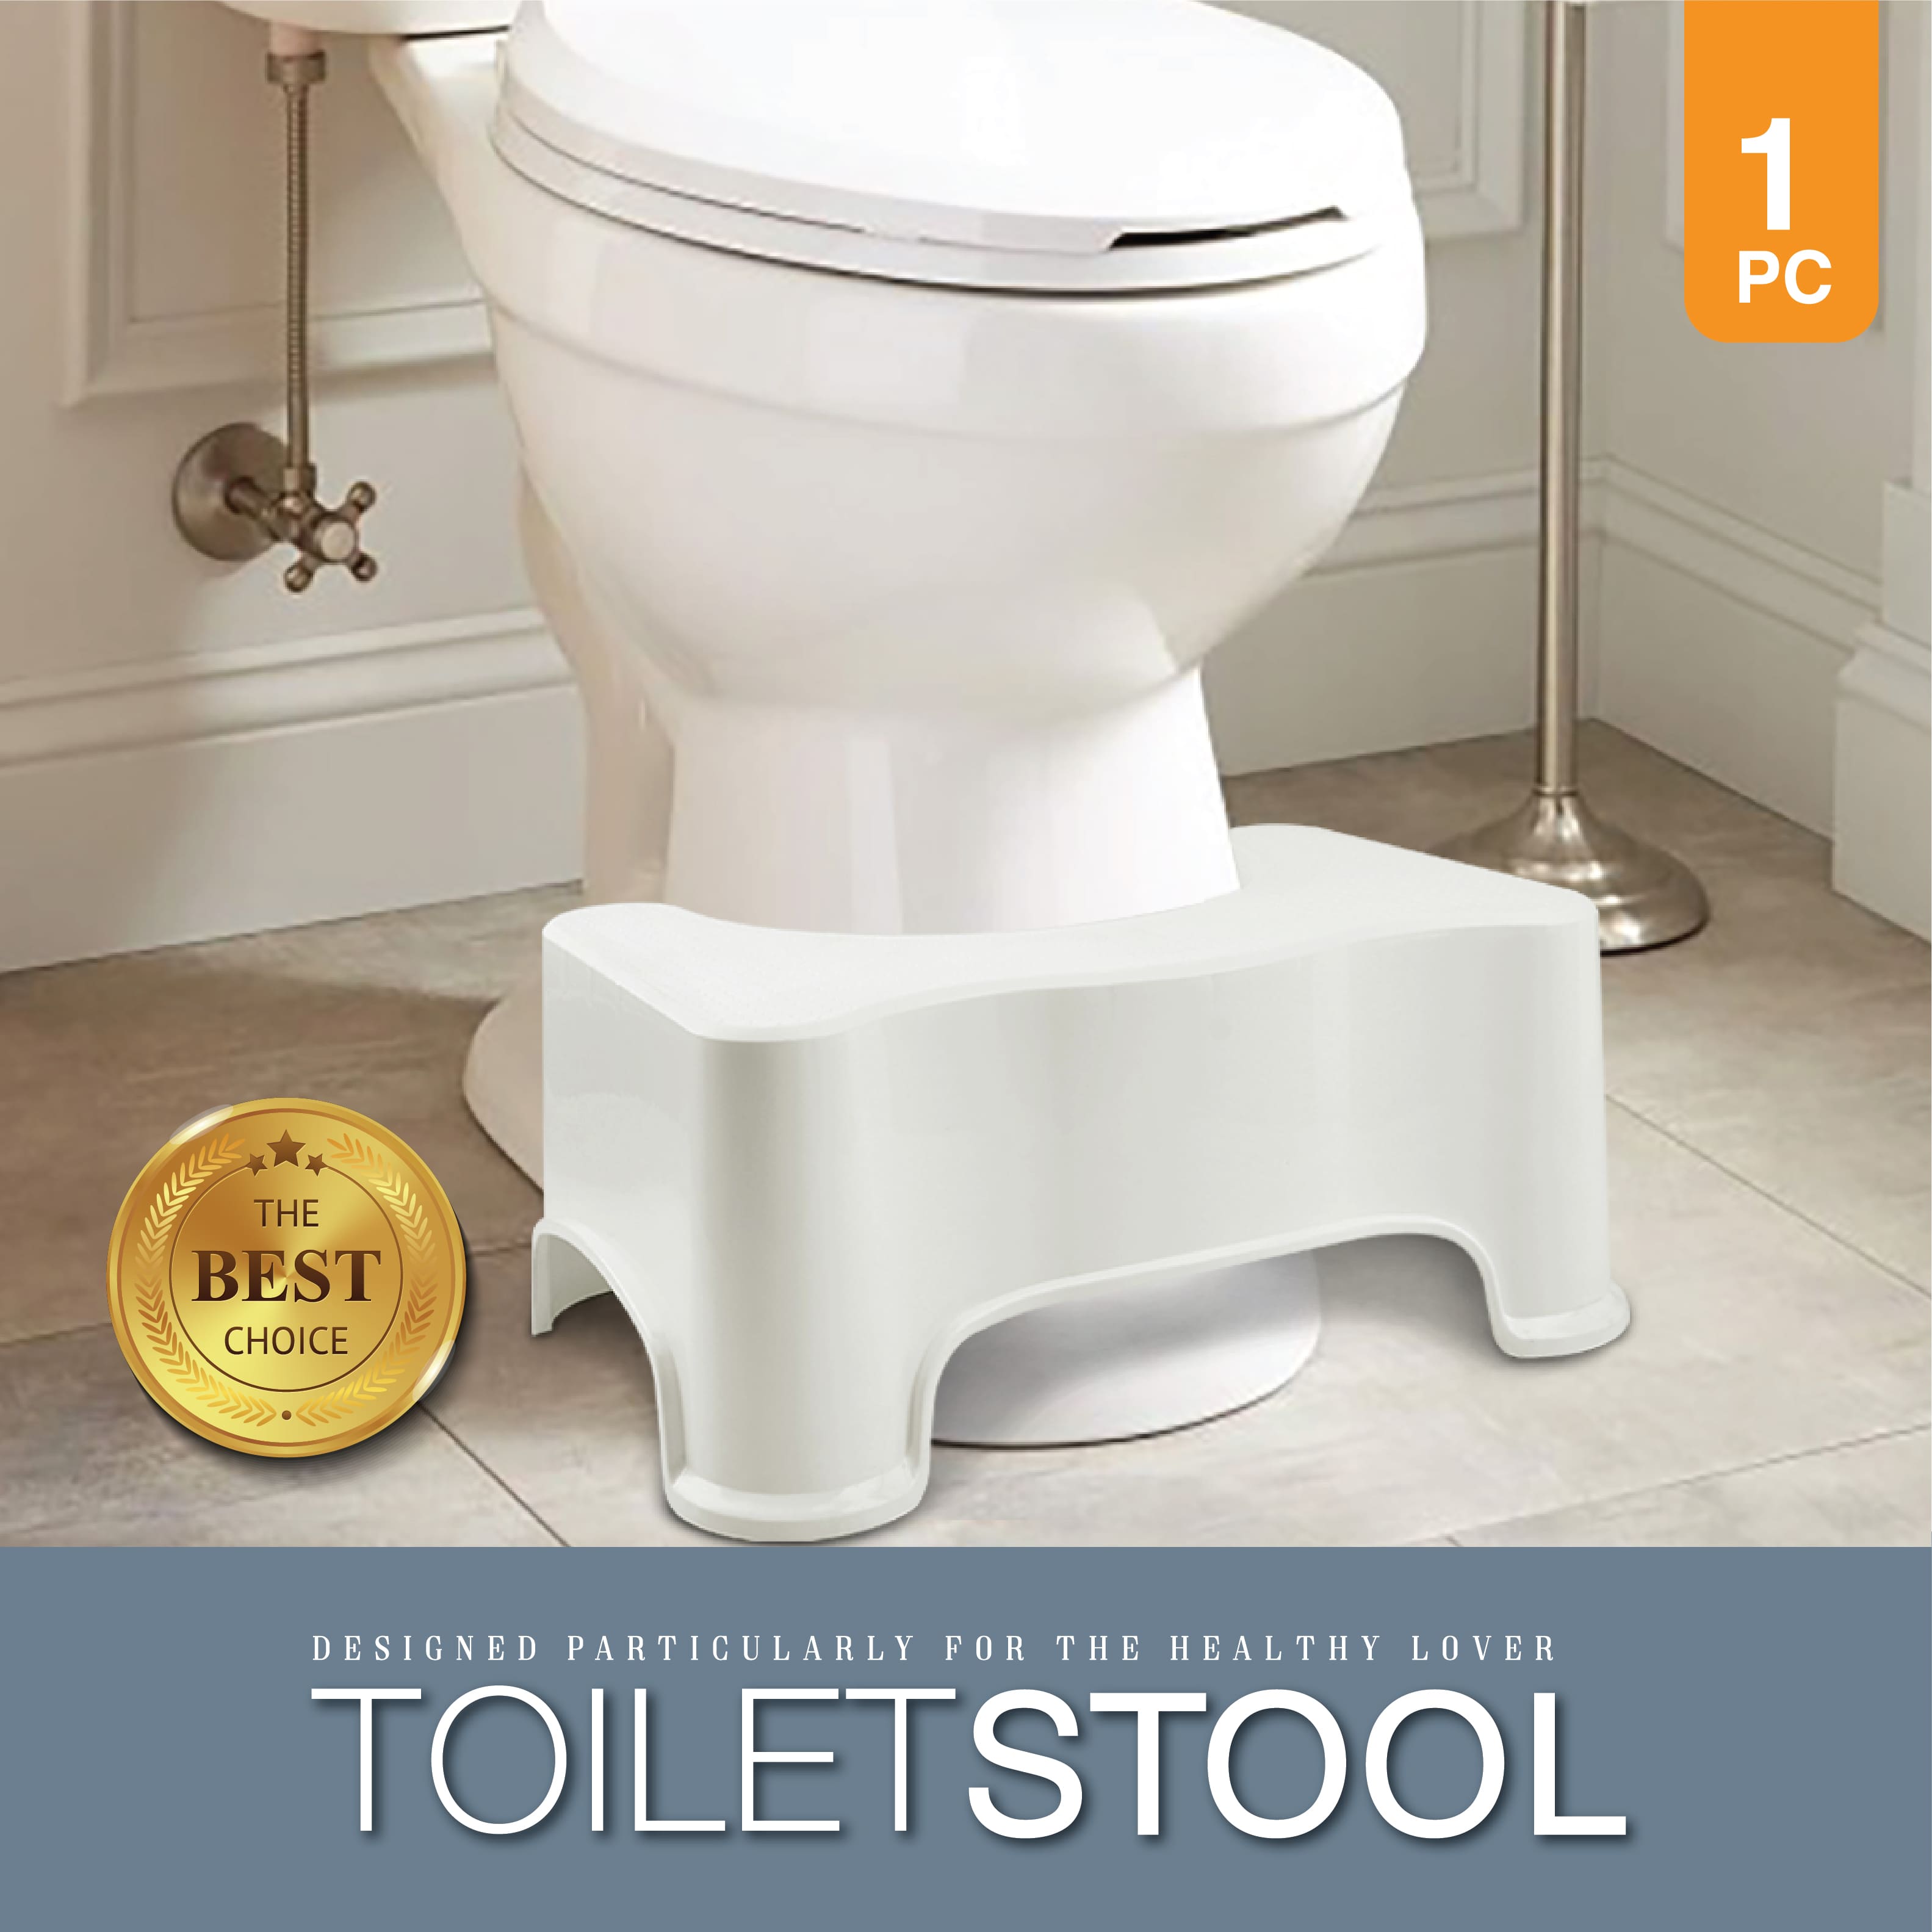 ide'e NEW PRODUCT Toilet Stool เก้าอี้วางเท้าสำหรับนั่งขับถ่าย เพื่อช่วยให้นั่งขับถ่ายในท่าที่ถูกต้อง และช่วยให้ขับถ่ายได้ง่ายขึ